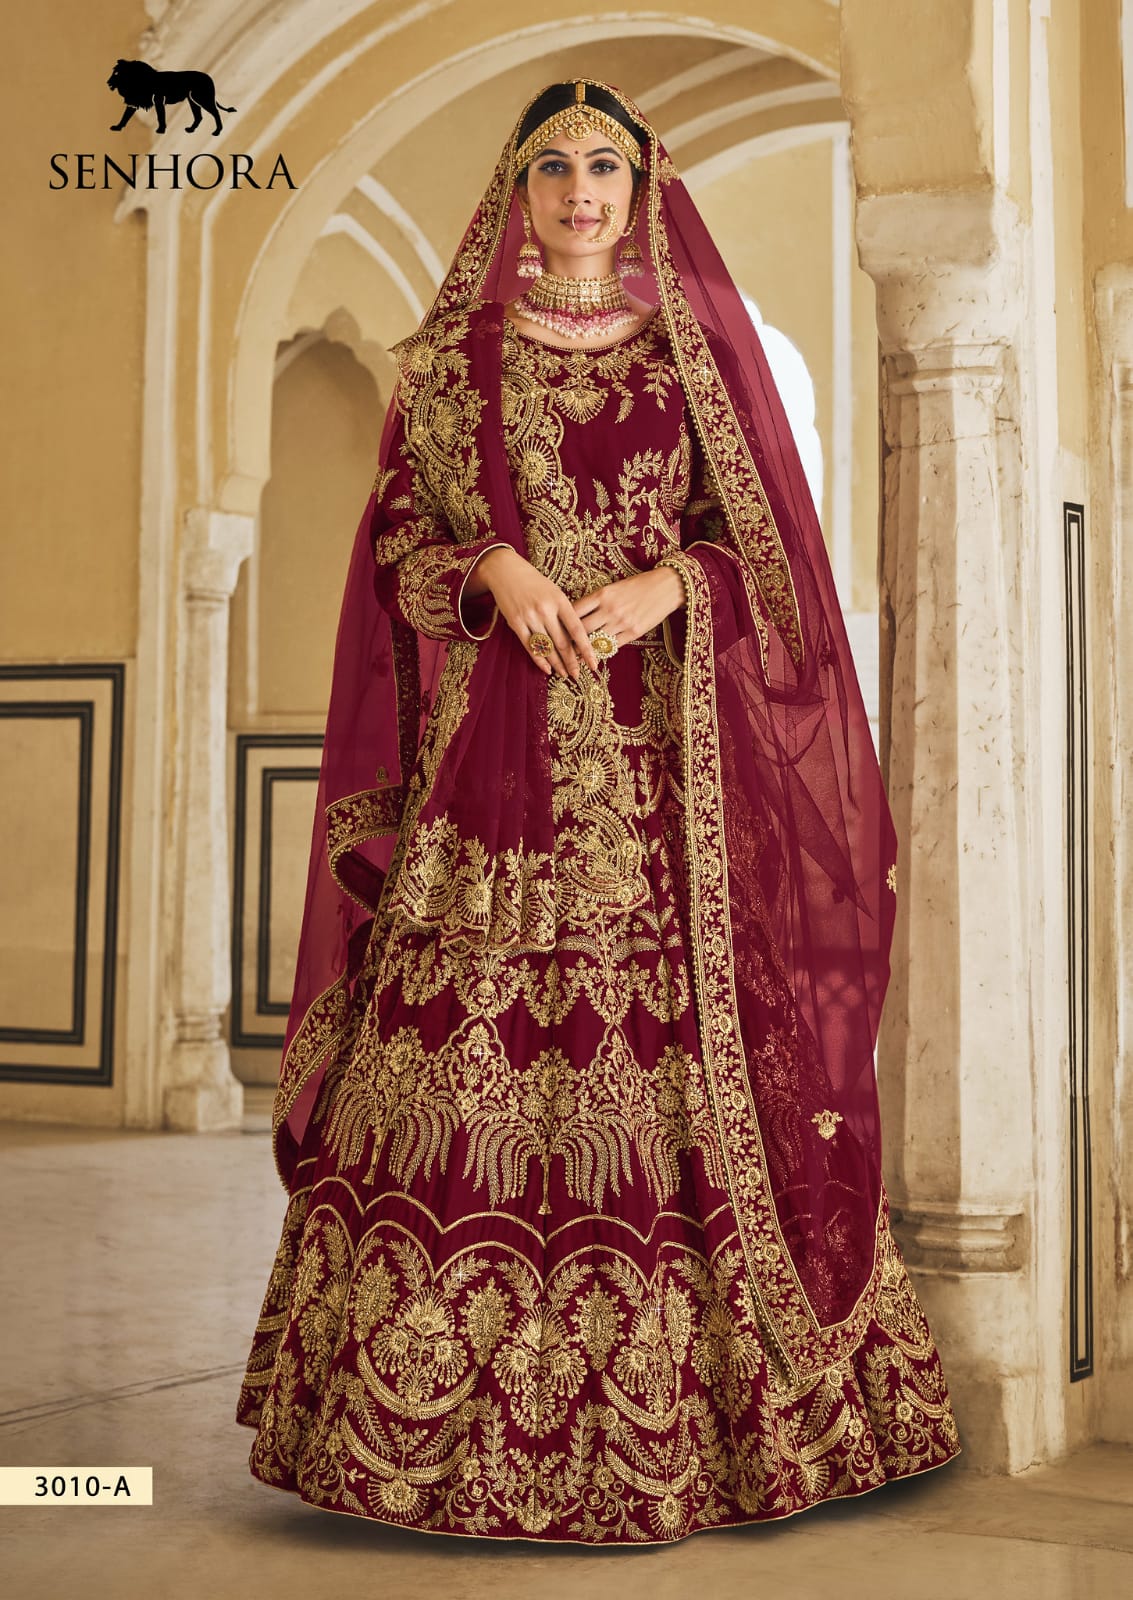 Wedding Wear Printed Cotton Lehenga Choli at Rs 1600 in Jaipur